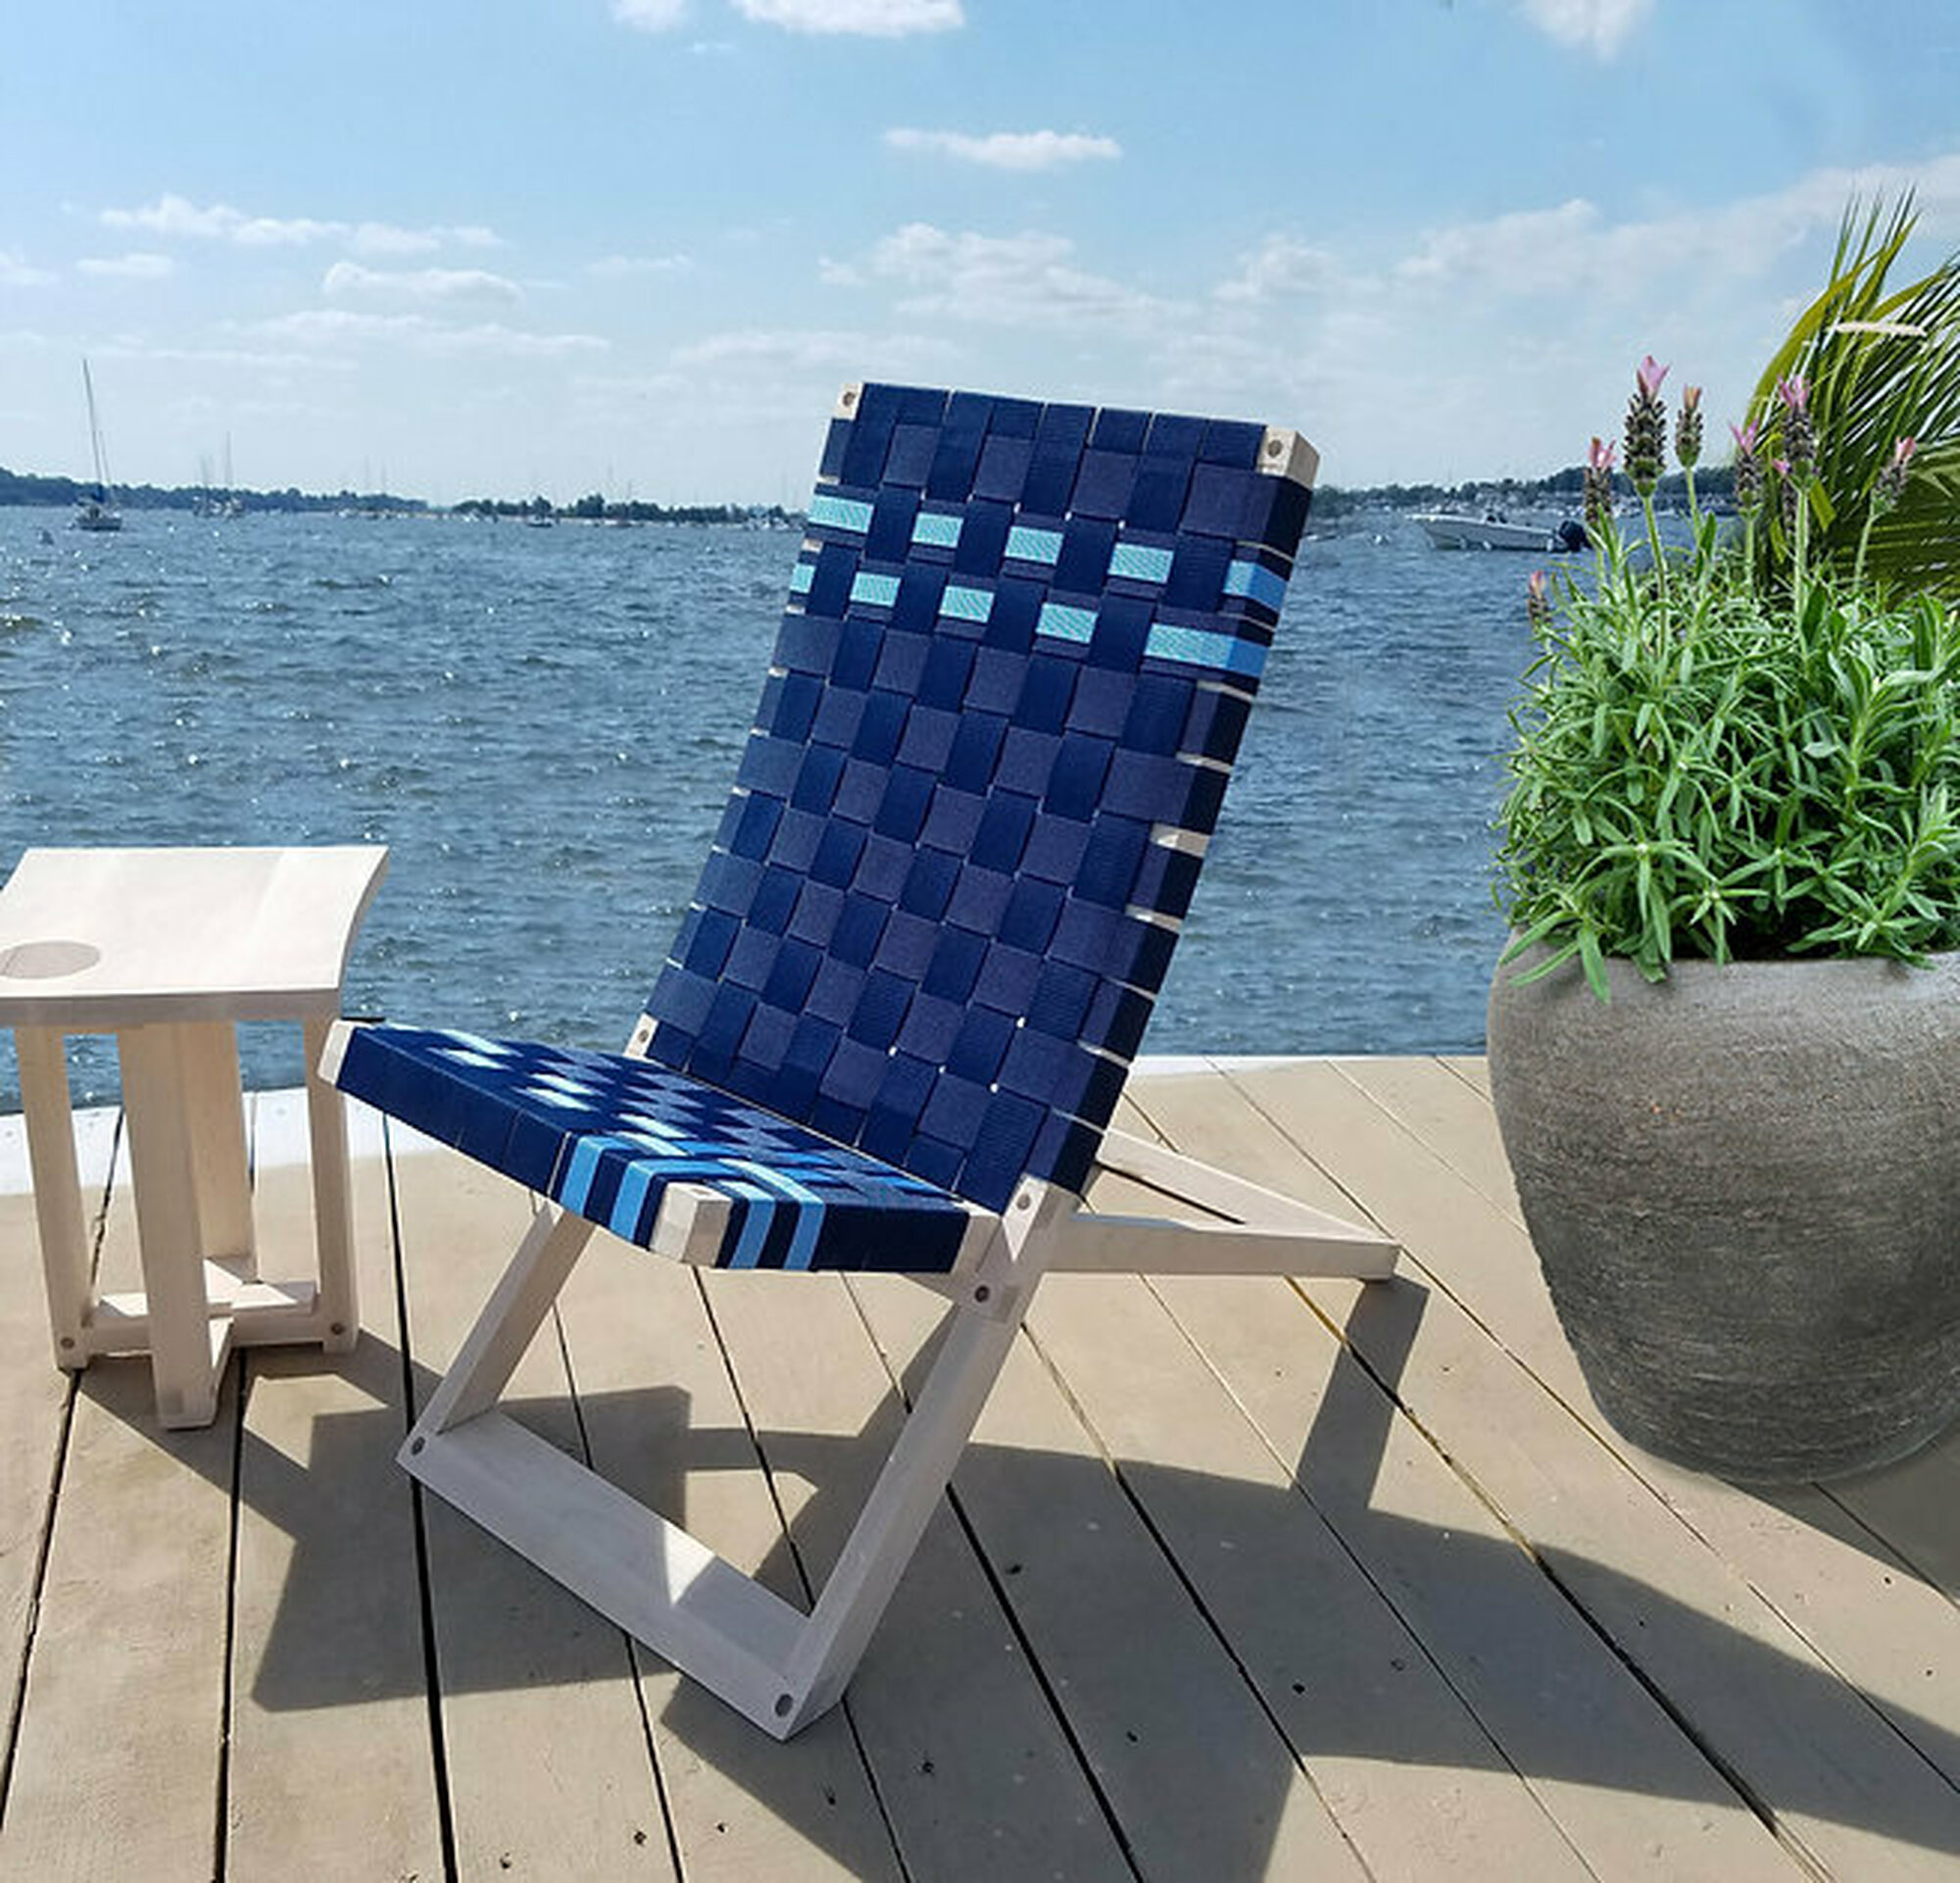 Seaside Deck Chair